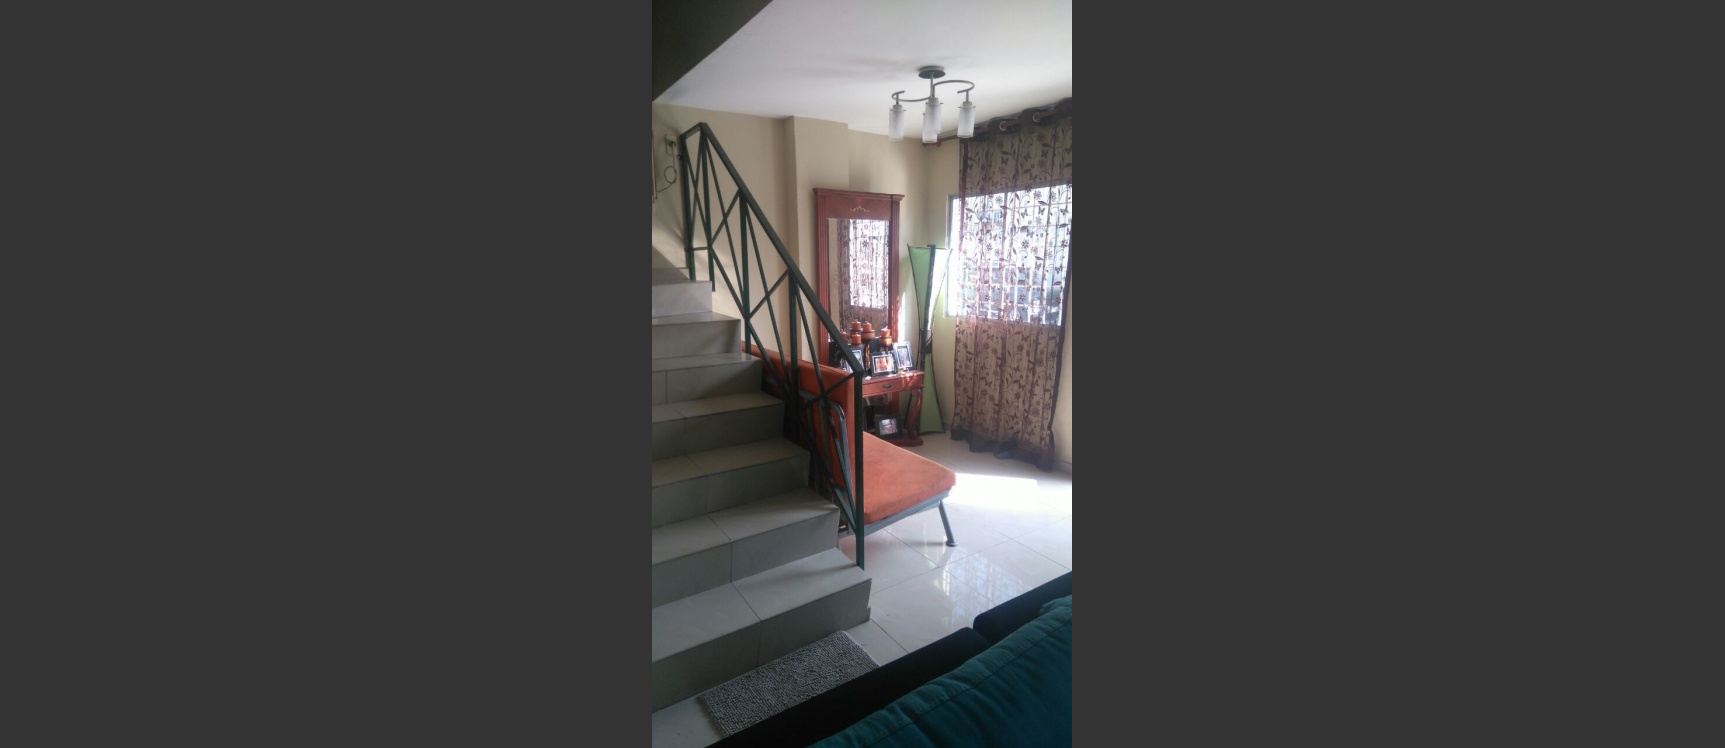 GeoBienes - Vendo casa en Urb. Loma Vista, Guayaquil - Plusvalia Guayaquil Casas de venta y alquiler Inmobiliaria Ecuador